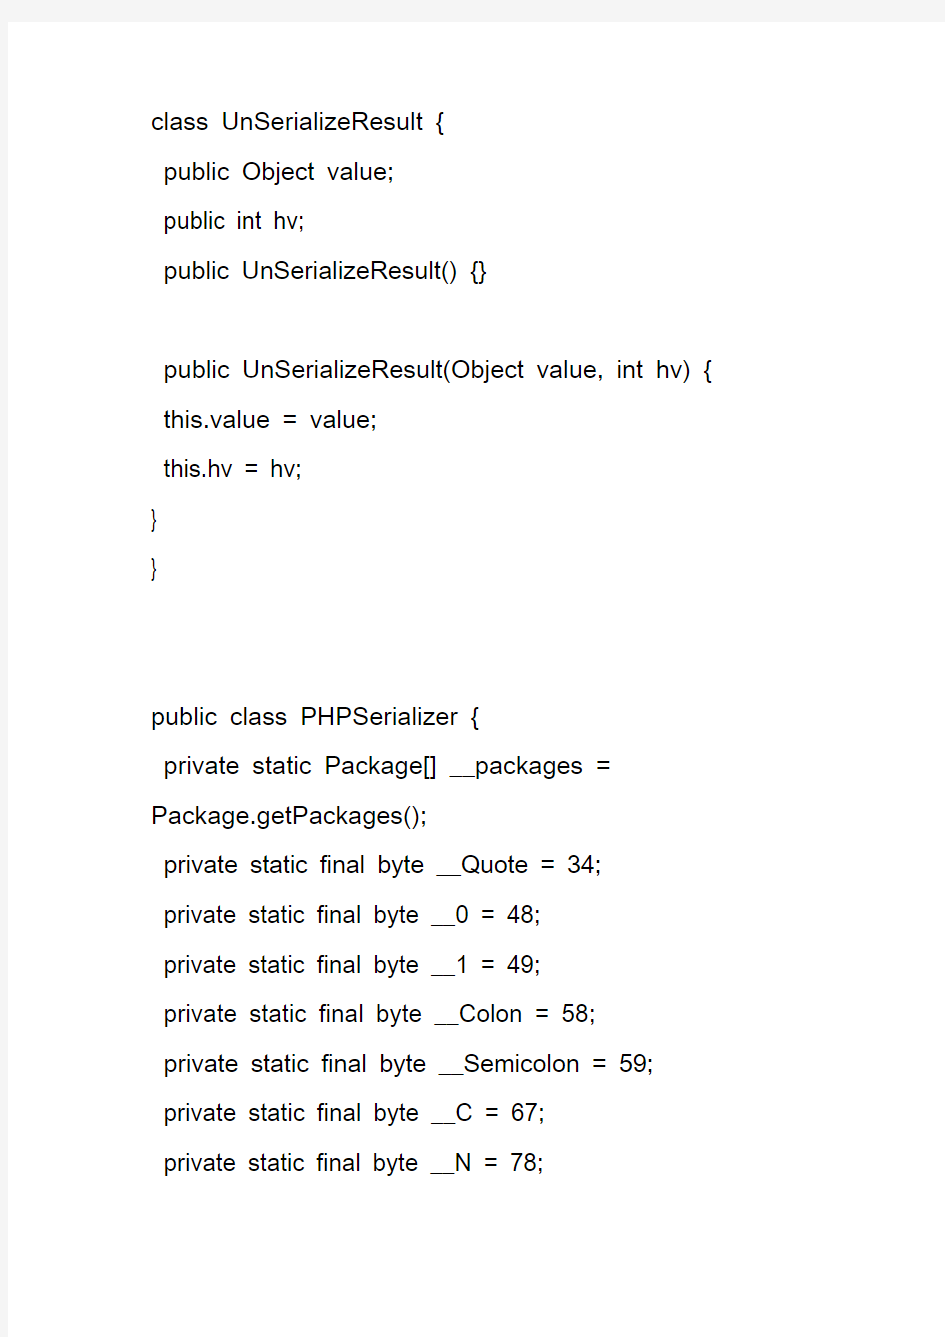 将php序列化到数据库的对象饭序列化成java对象